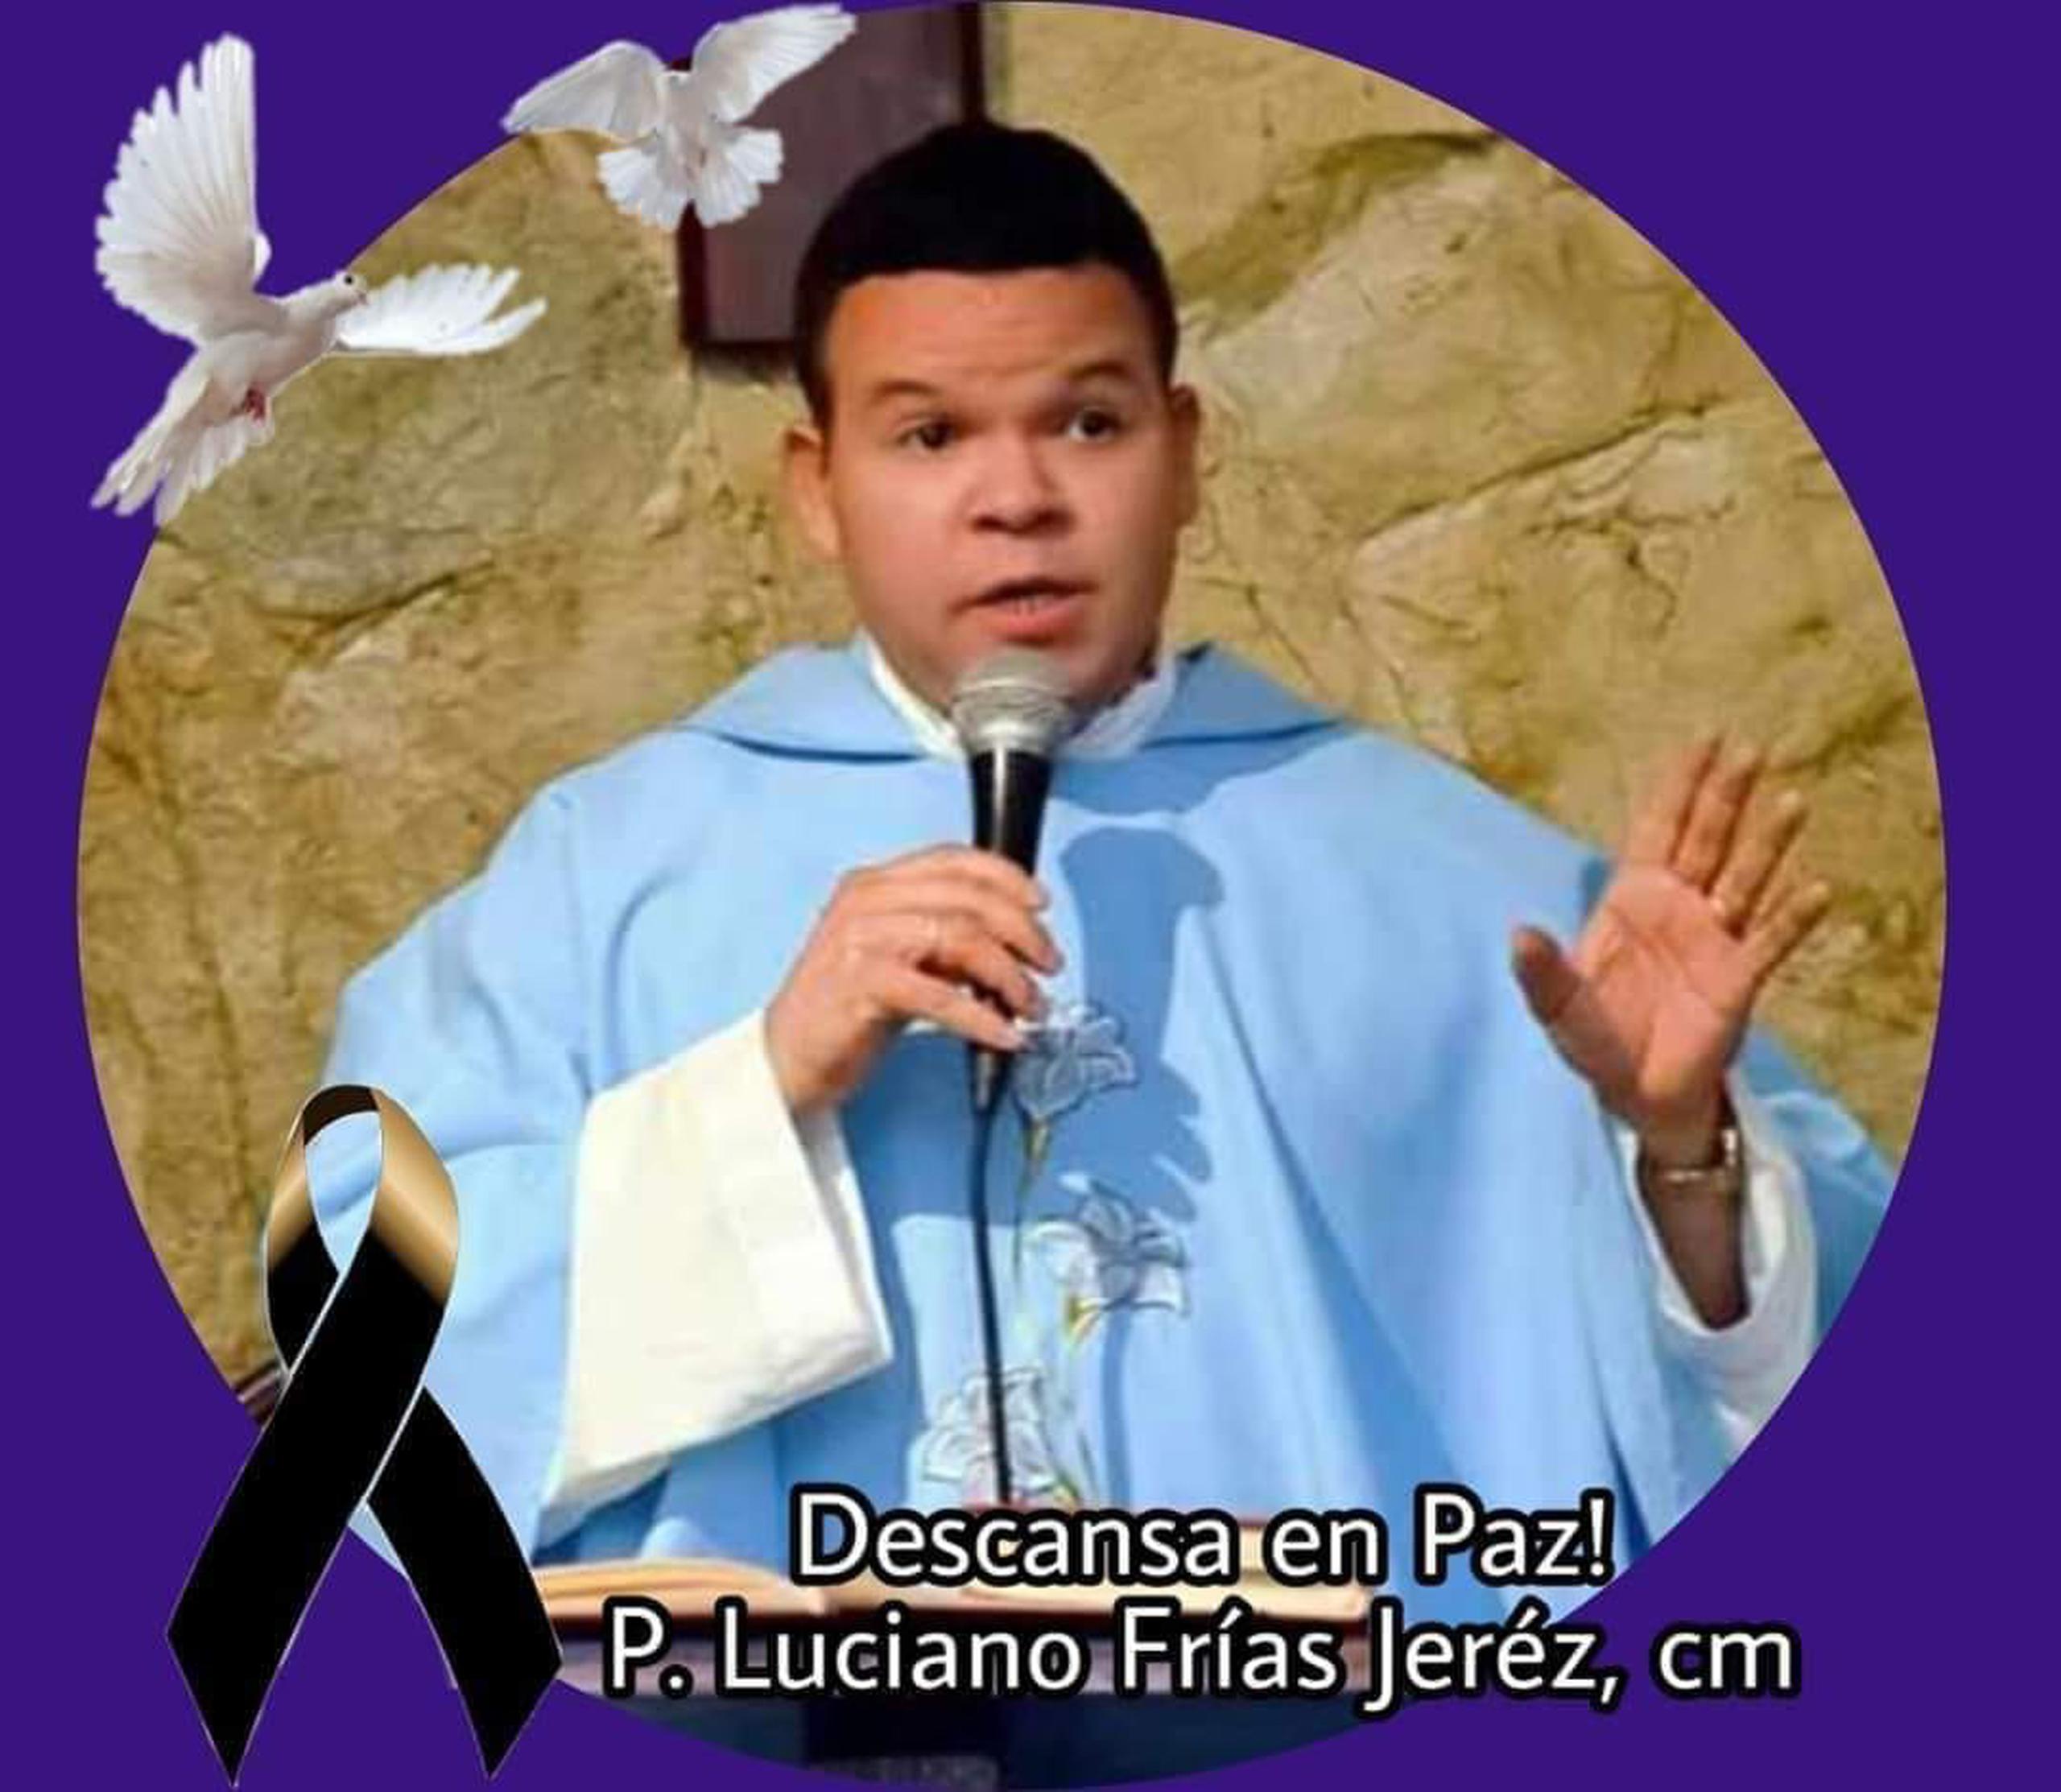 Sacerdote Luciano Frías Jeréz